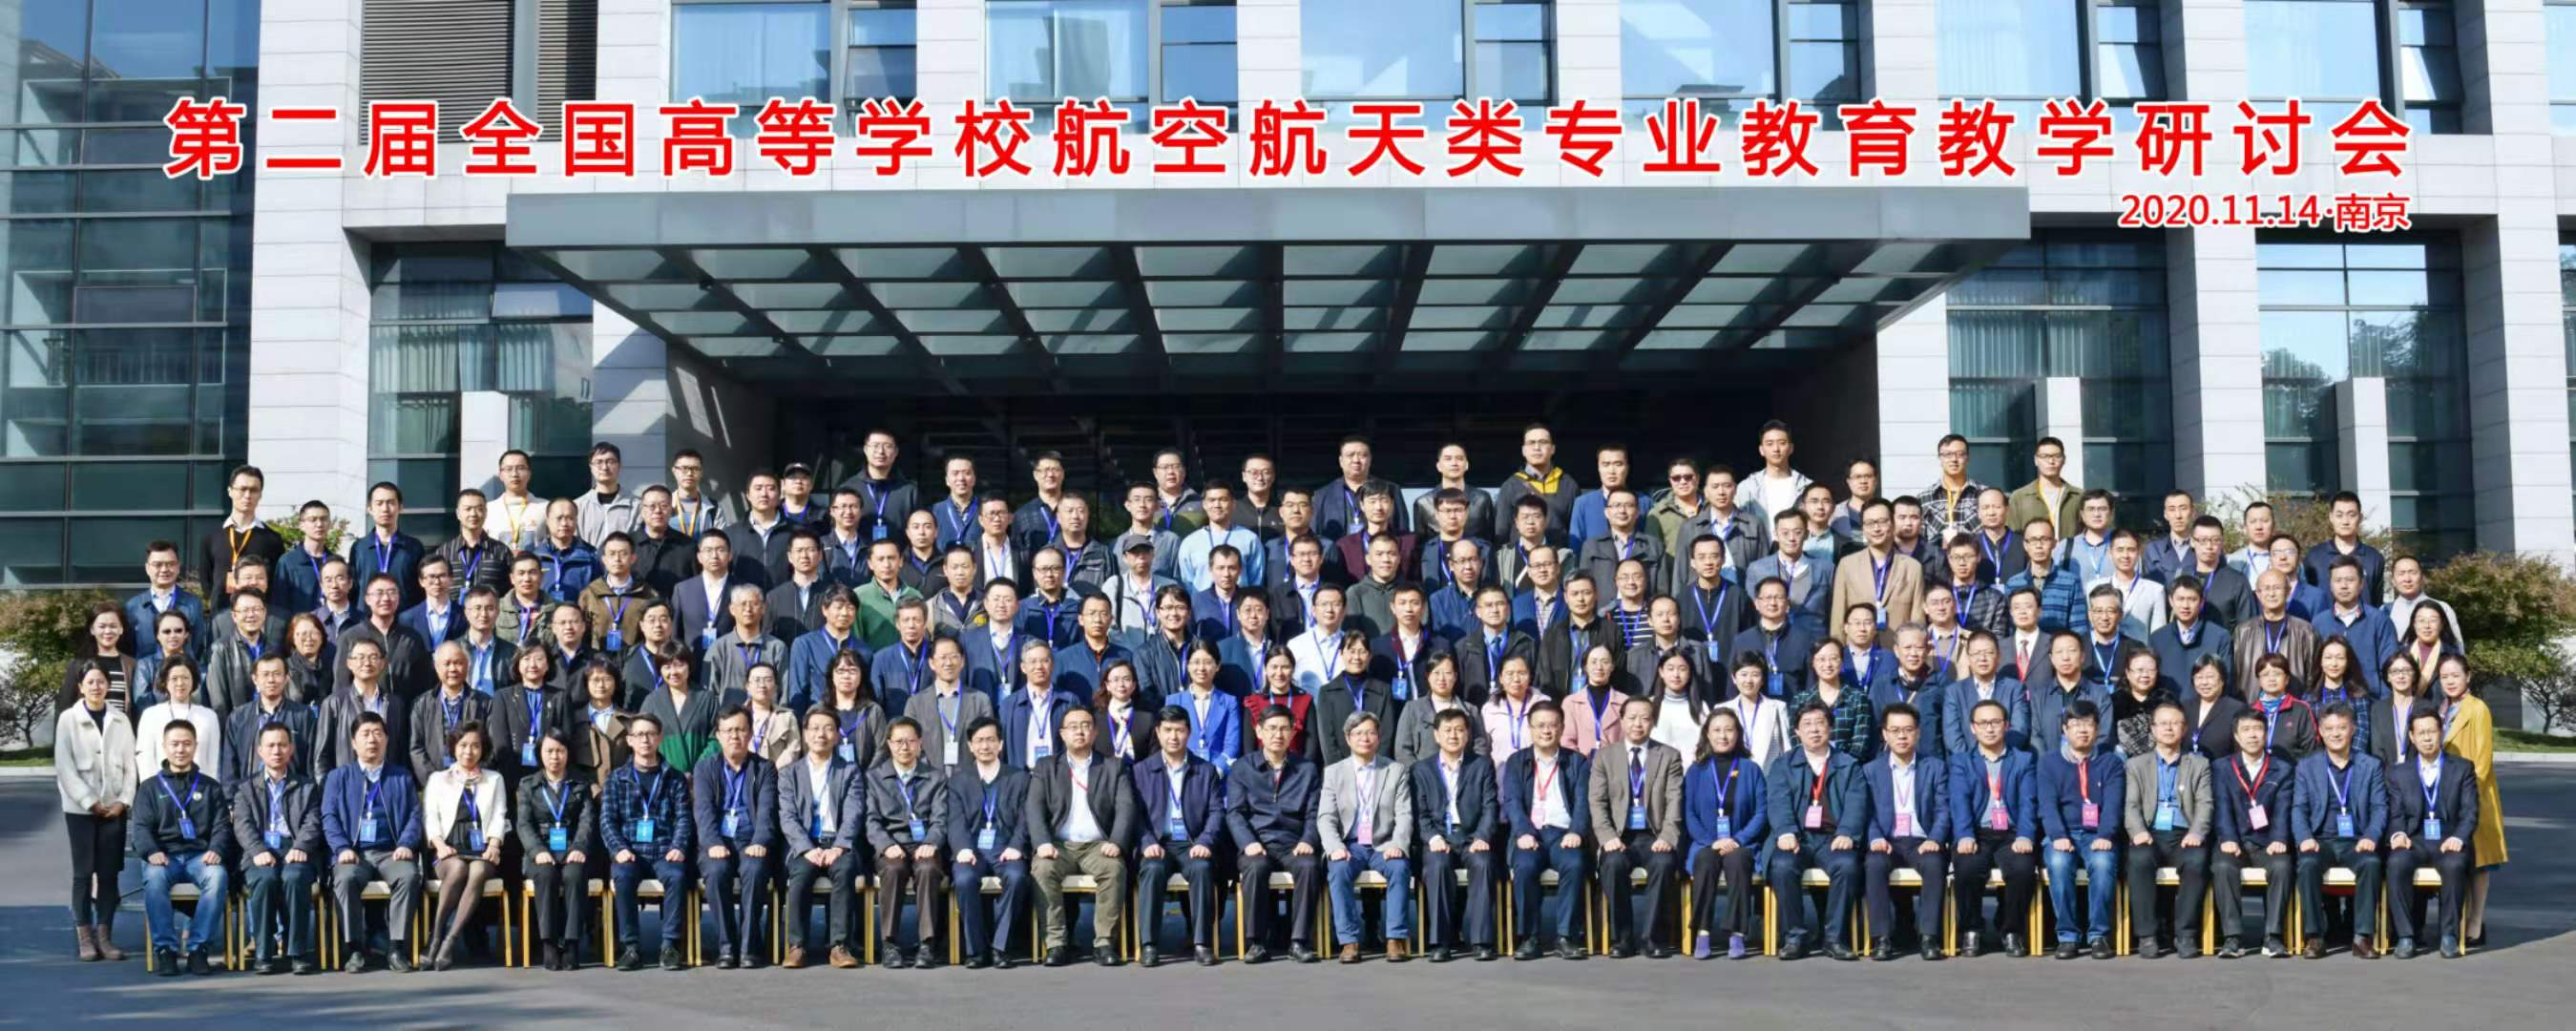 侯晓院士率队参加第二届全国高校航空航天类专业教育教学研讨会 北京理工大学宇航学院